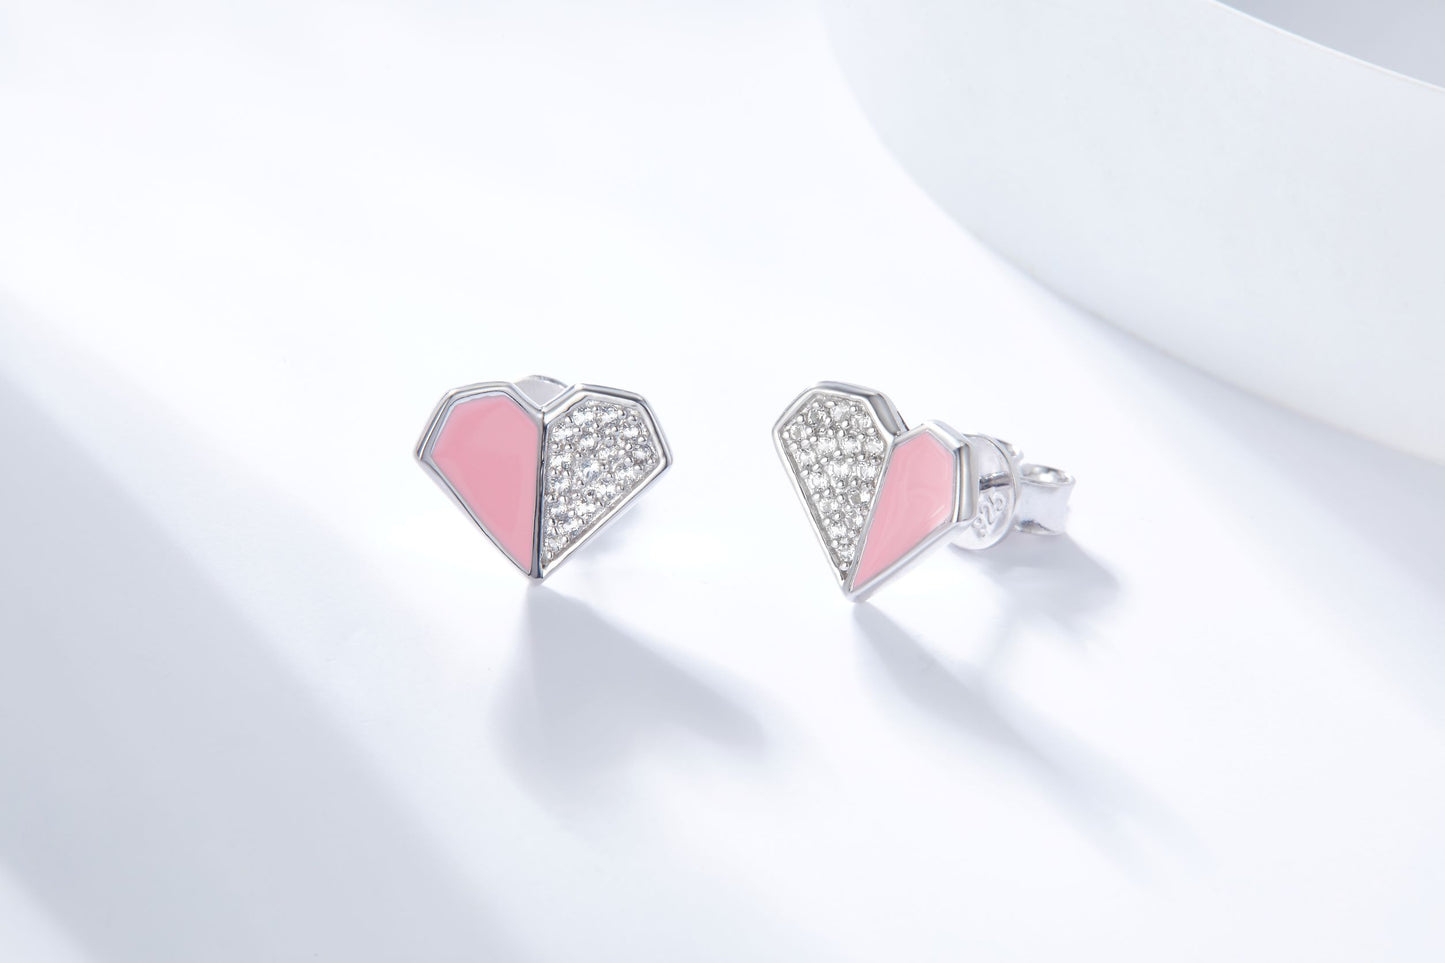 Pink Heart Enamel Silver Studs Earrings for Women